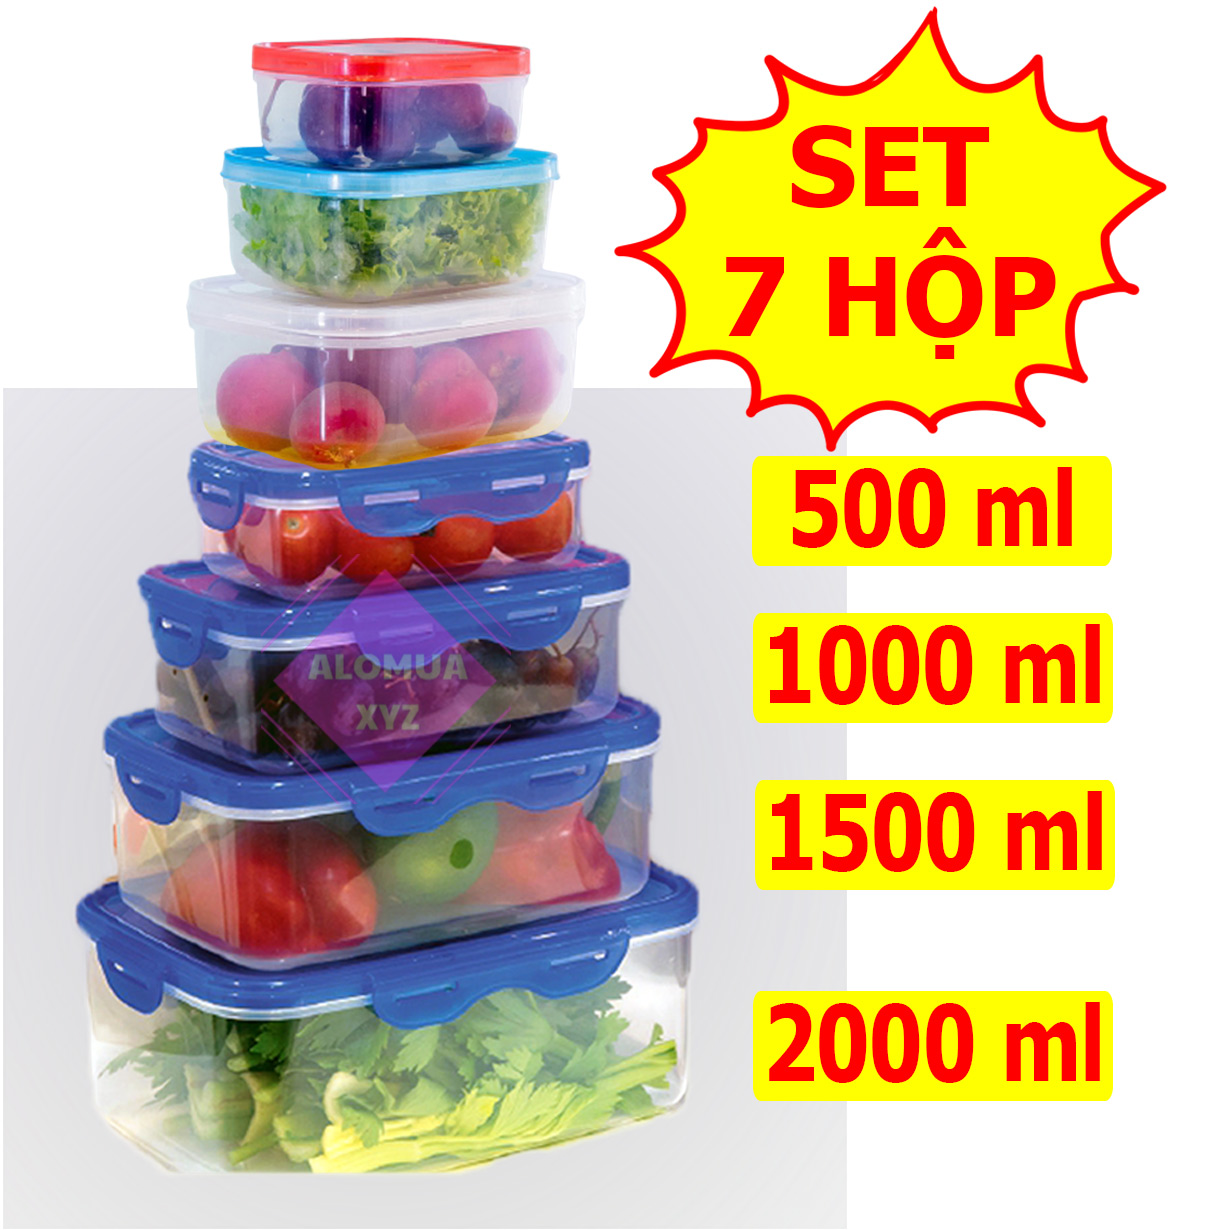 Set 7 hộp nhựa  đựng thực phẩm chữ nhật, hộp có nắp gài chắc chắn.  Bộ hộp đủ loại nhiều dung tích  từ 100 đến 2000ml  HTP78910 HB010203 Alomua